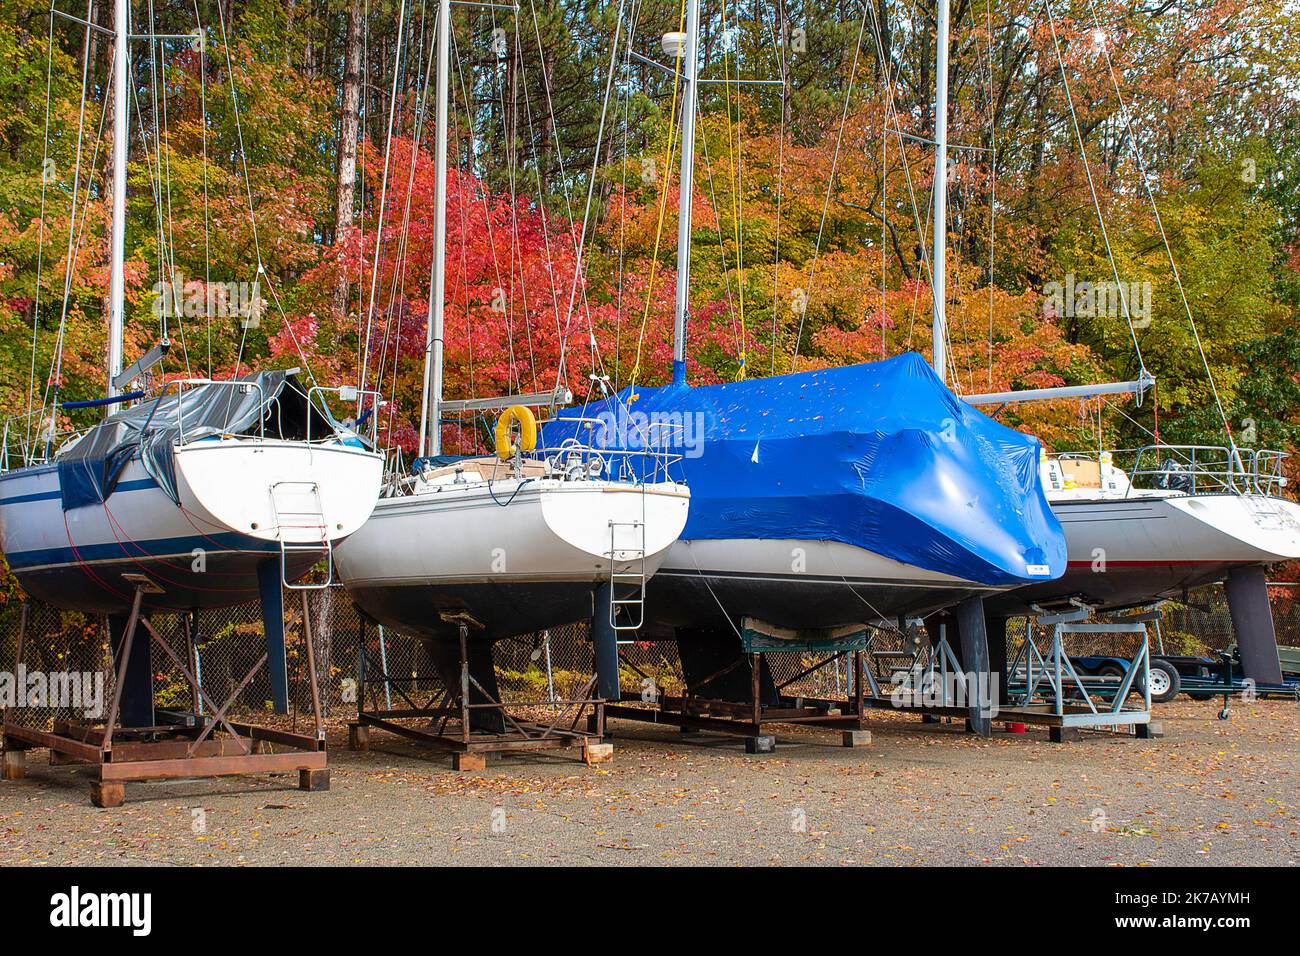 Segelboote auf Wiegen in einem Outdoor-Lagerbereich im Herbst Stockfoto